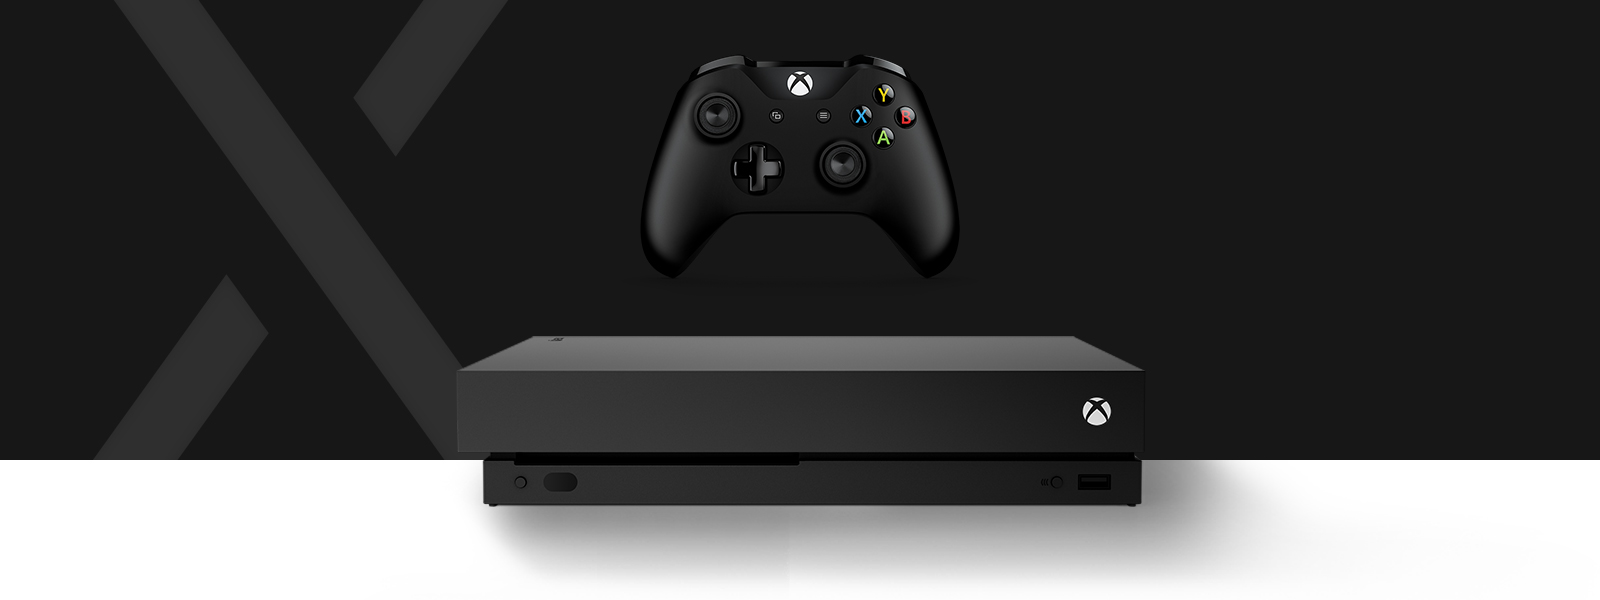 Vista frontal de la consola Xbox One S All-digital Edition frente a una letra S grande estilizada